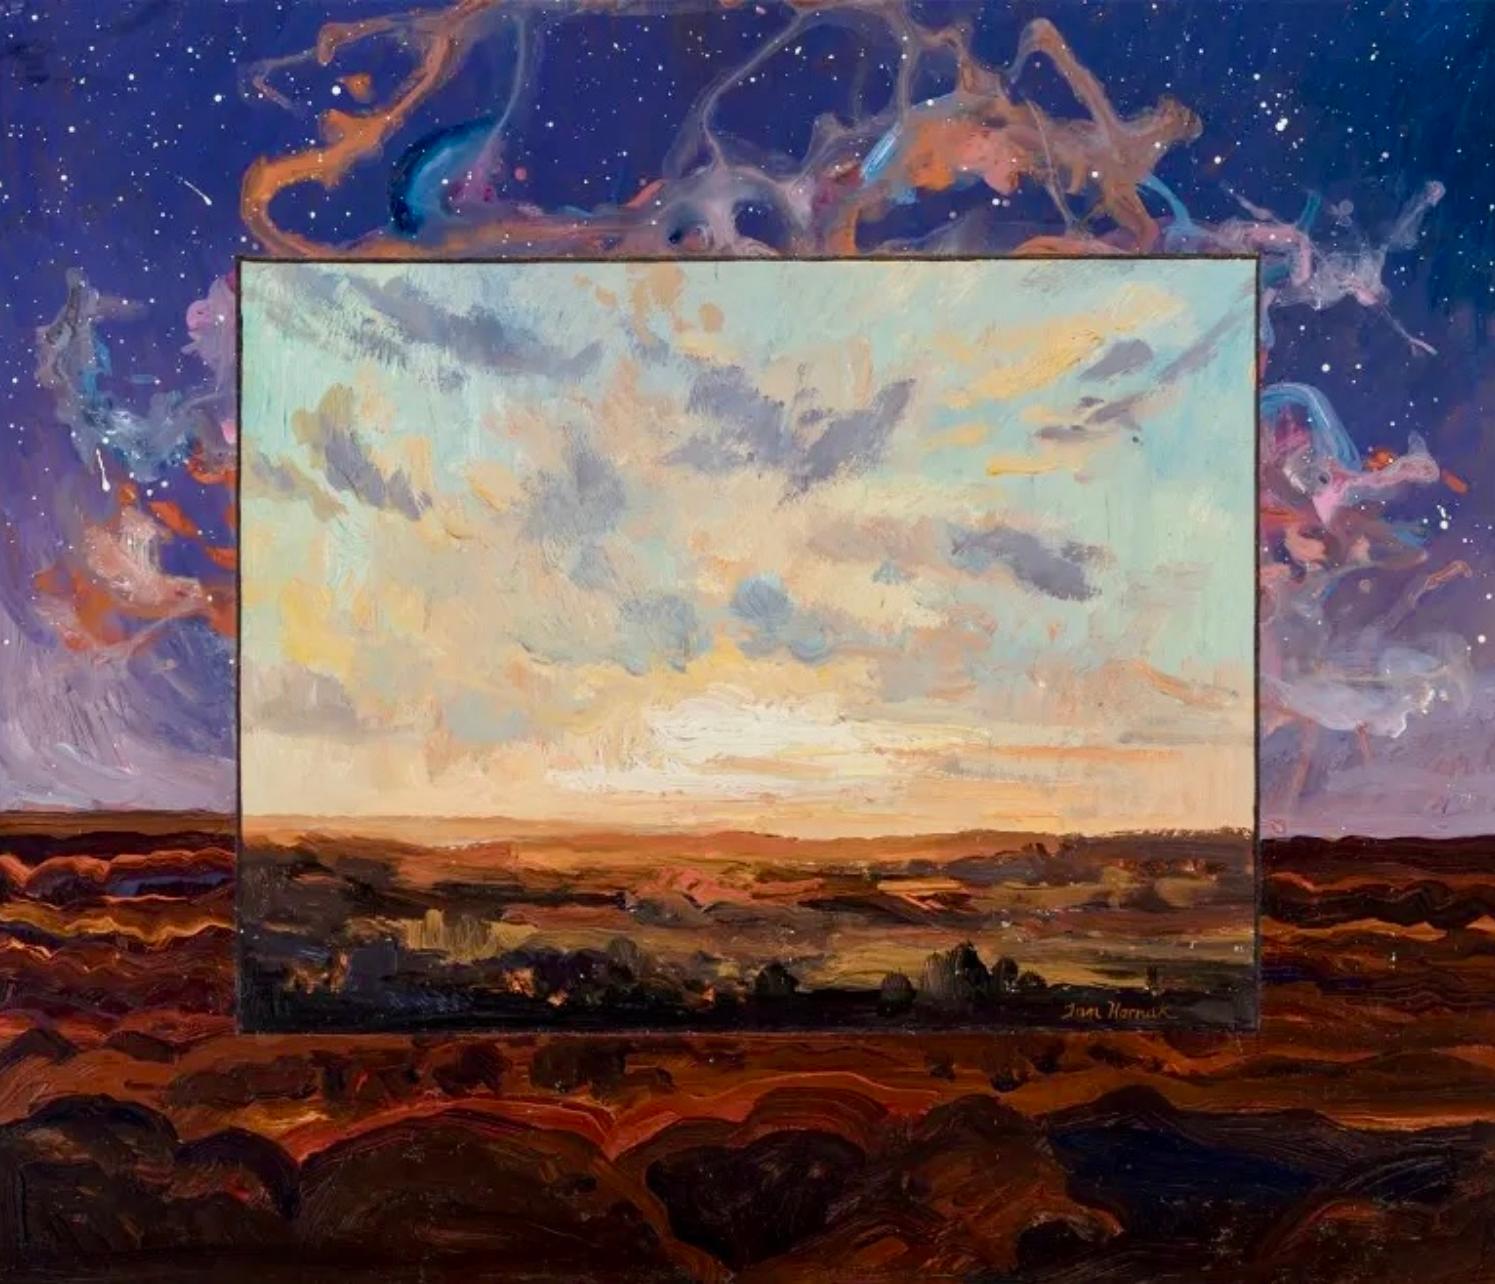 Primeval Landscape, 1985, Ian Hornak — Painting